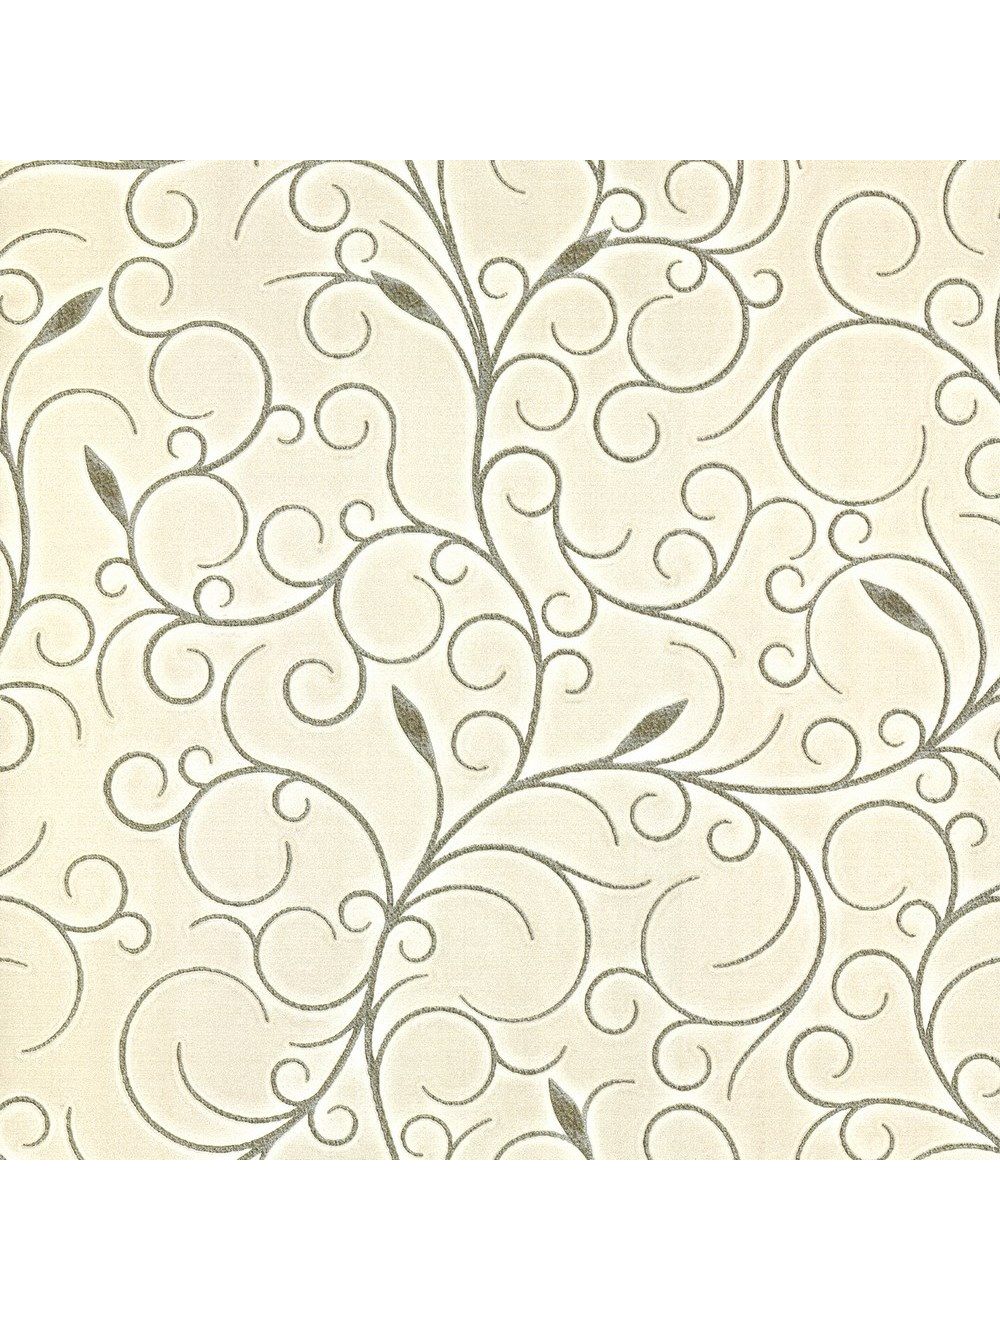 Belgravia Decor Carlotta Wallpaper GB9192 - DecorSave Wallpapers